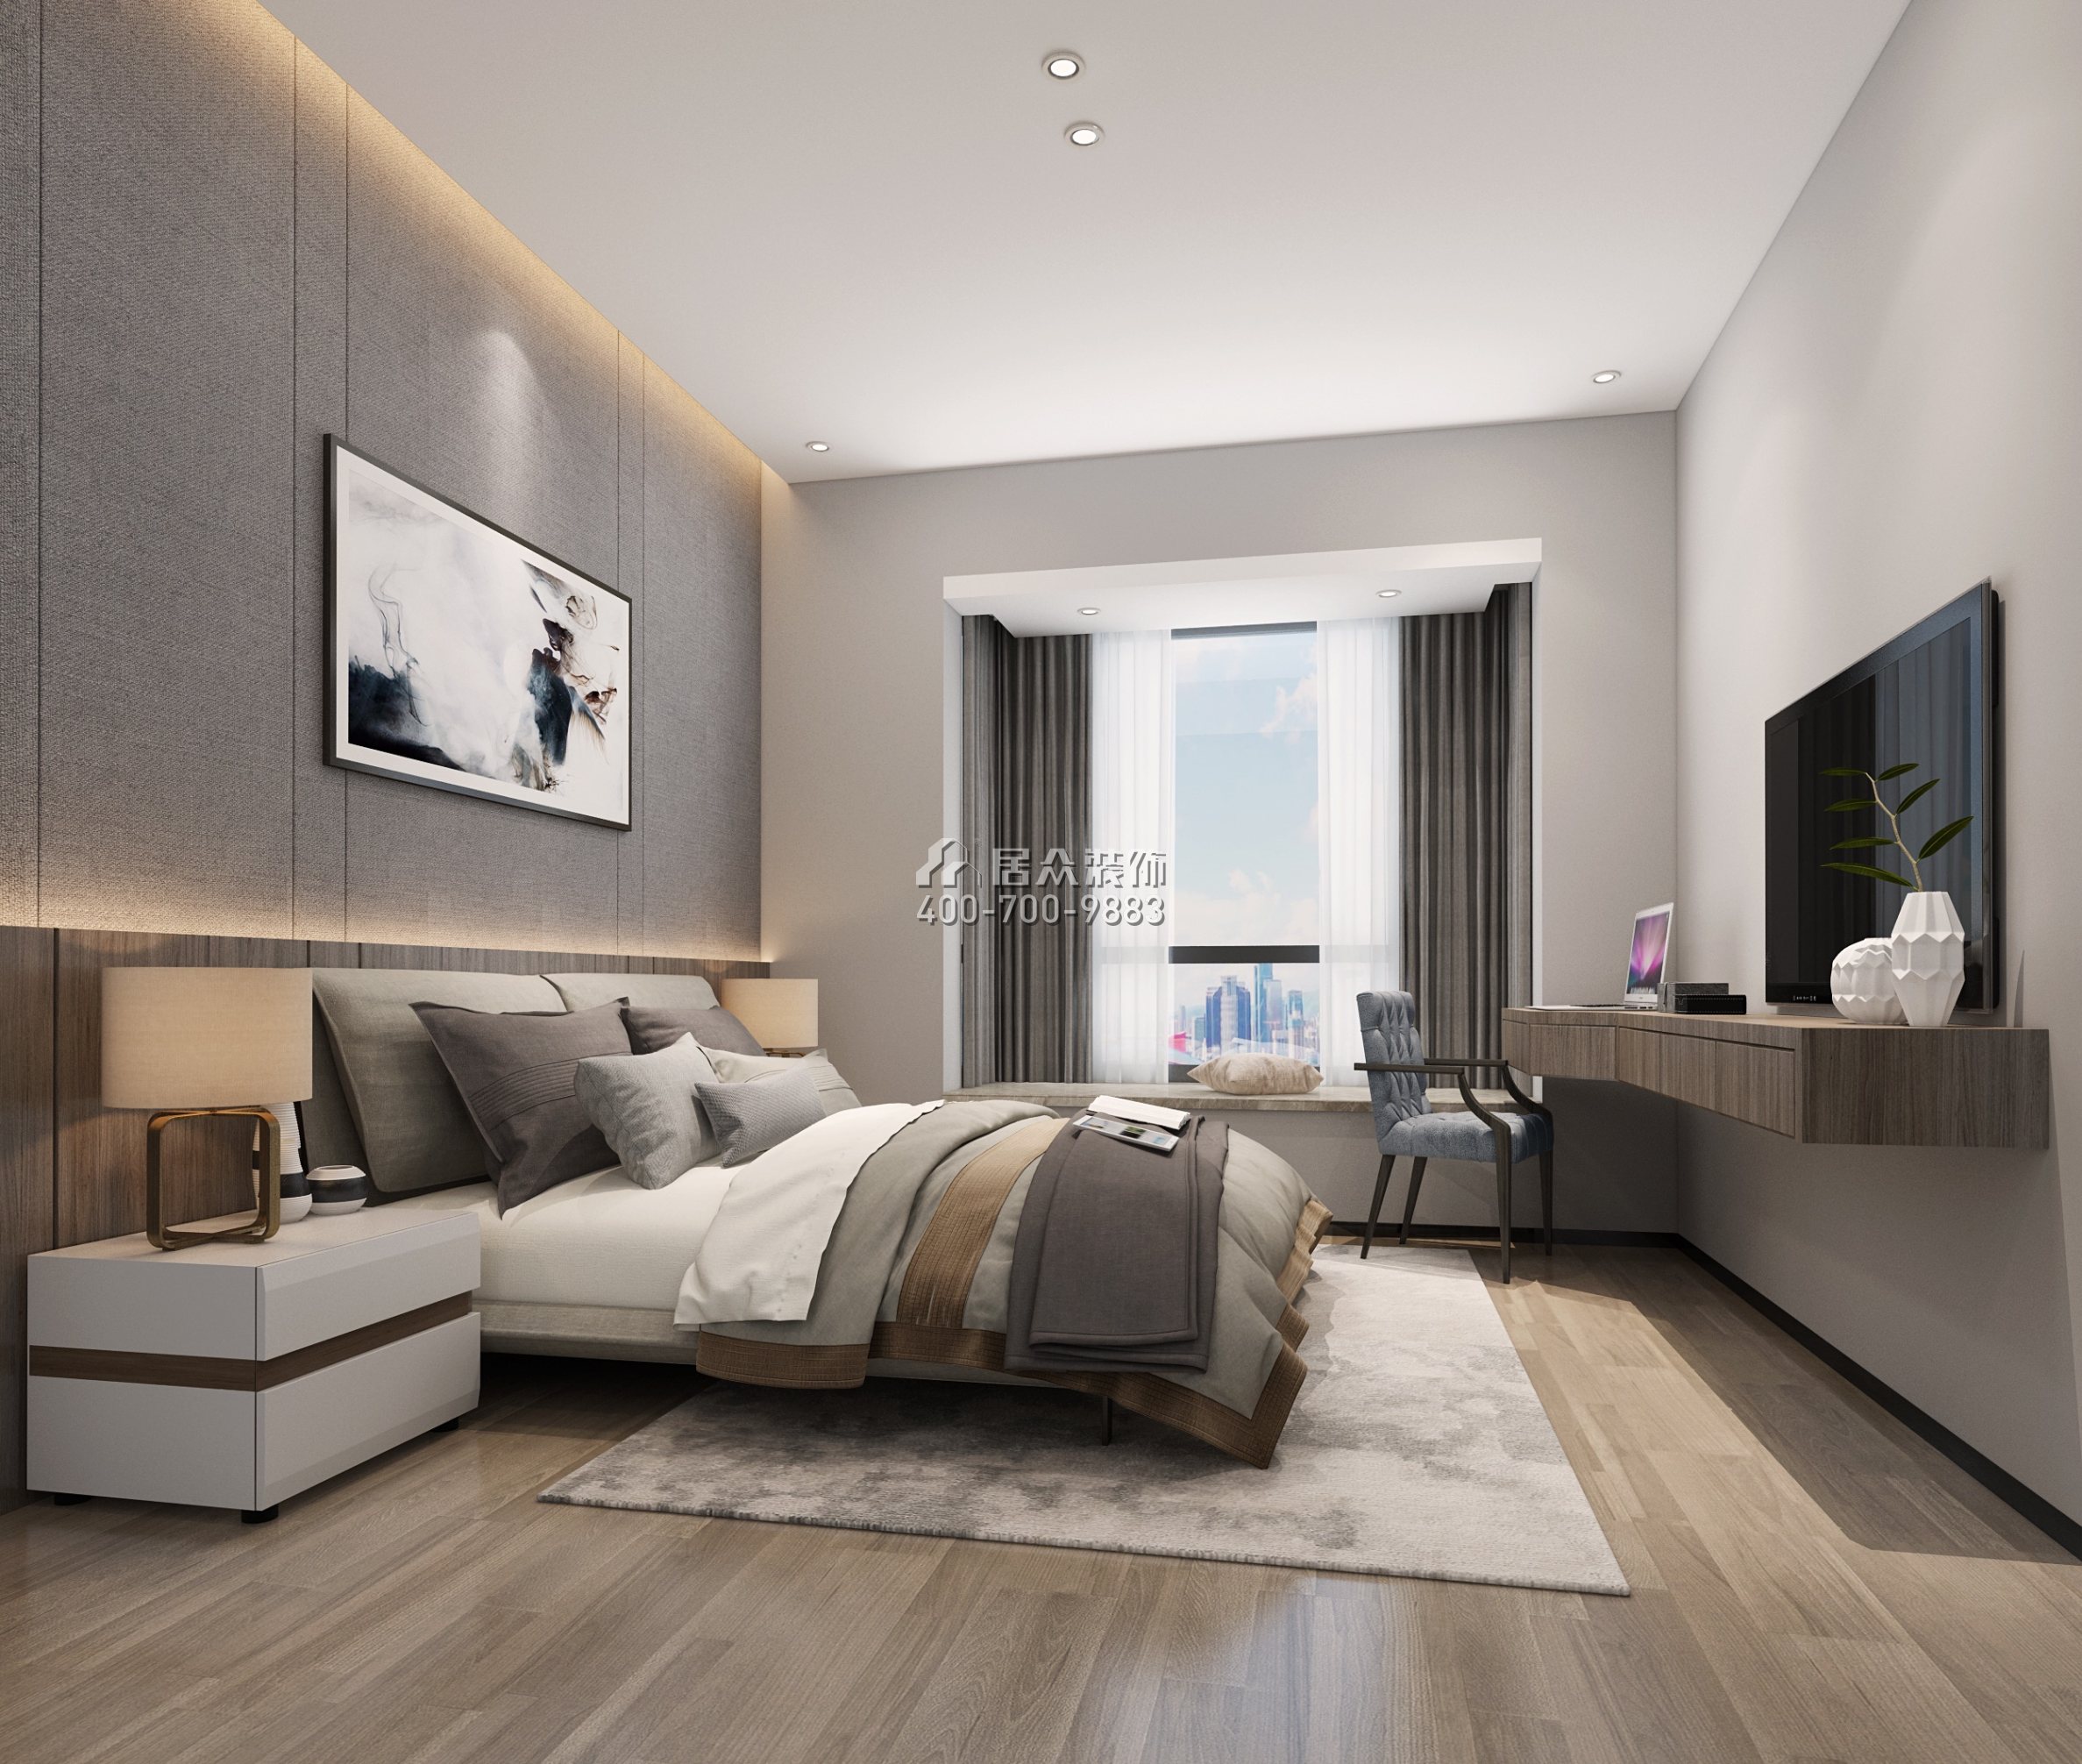 海月华庭89平方米现代简约风格平层户型卧室装修效果图